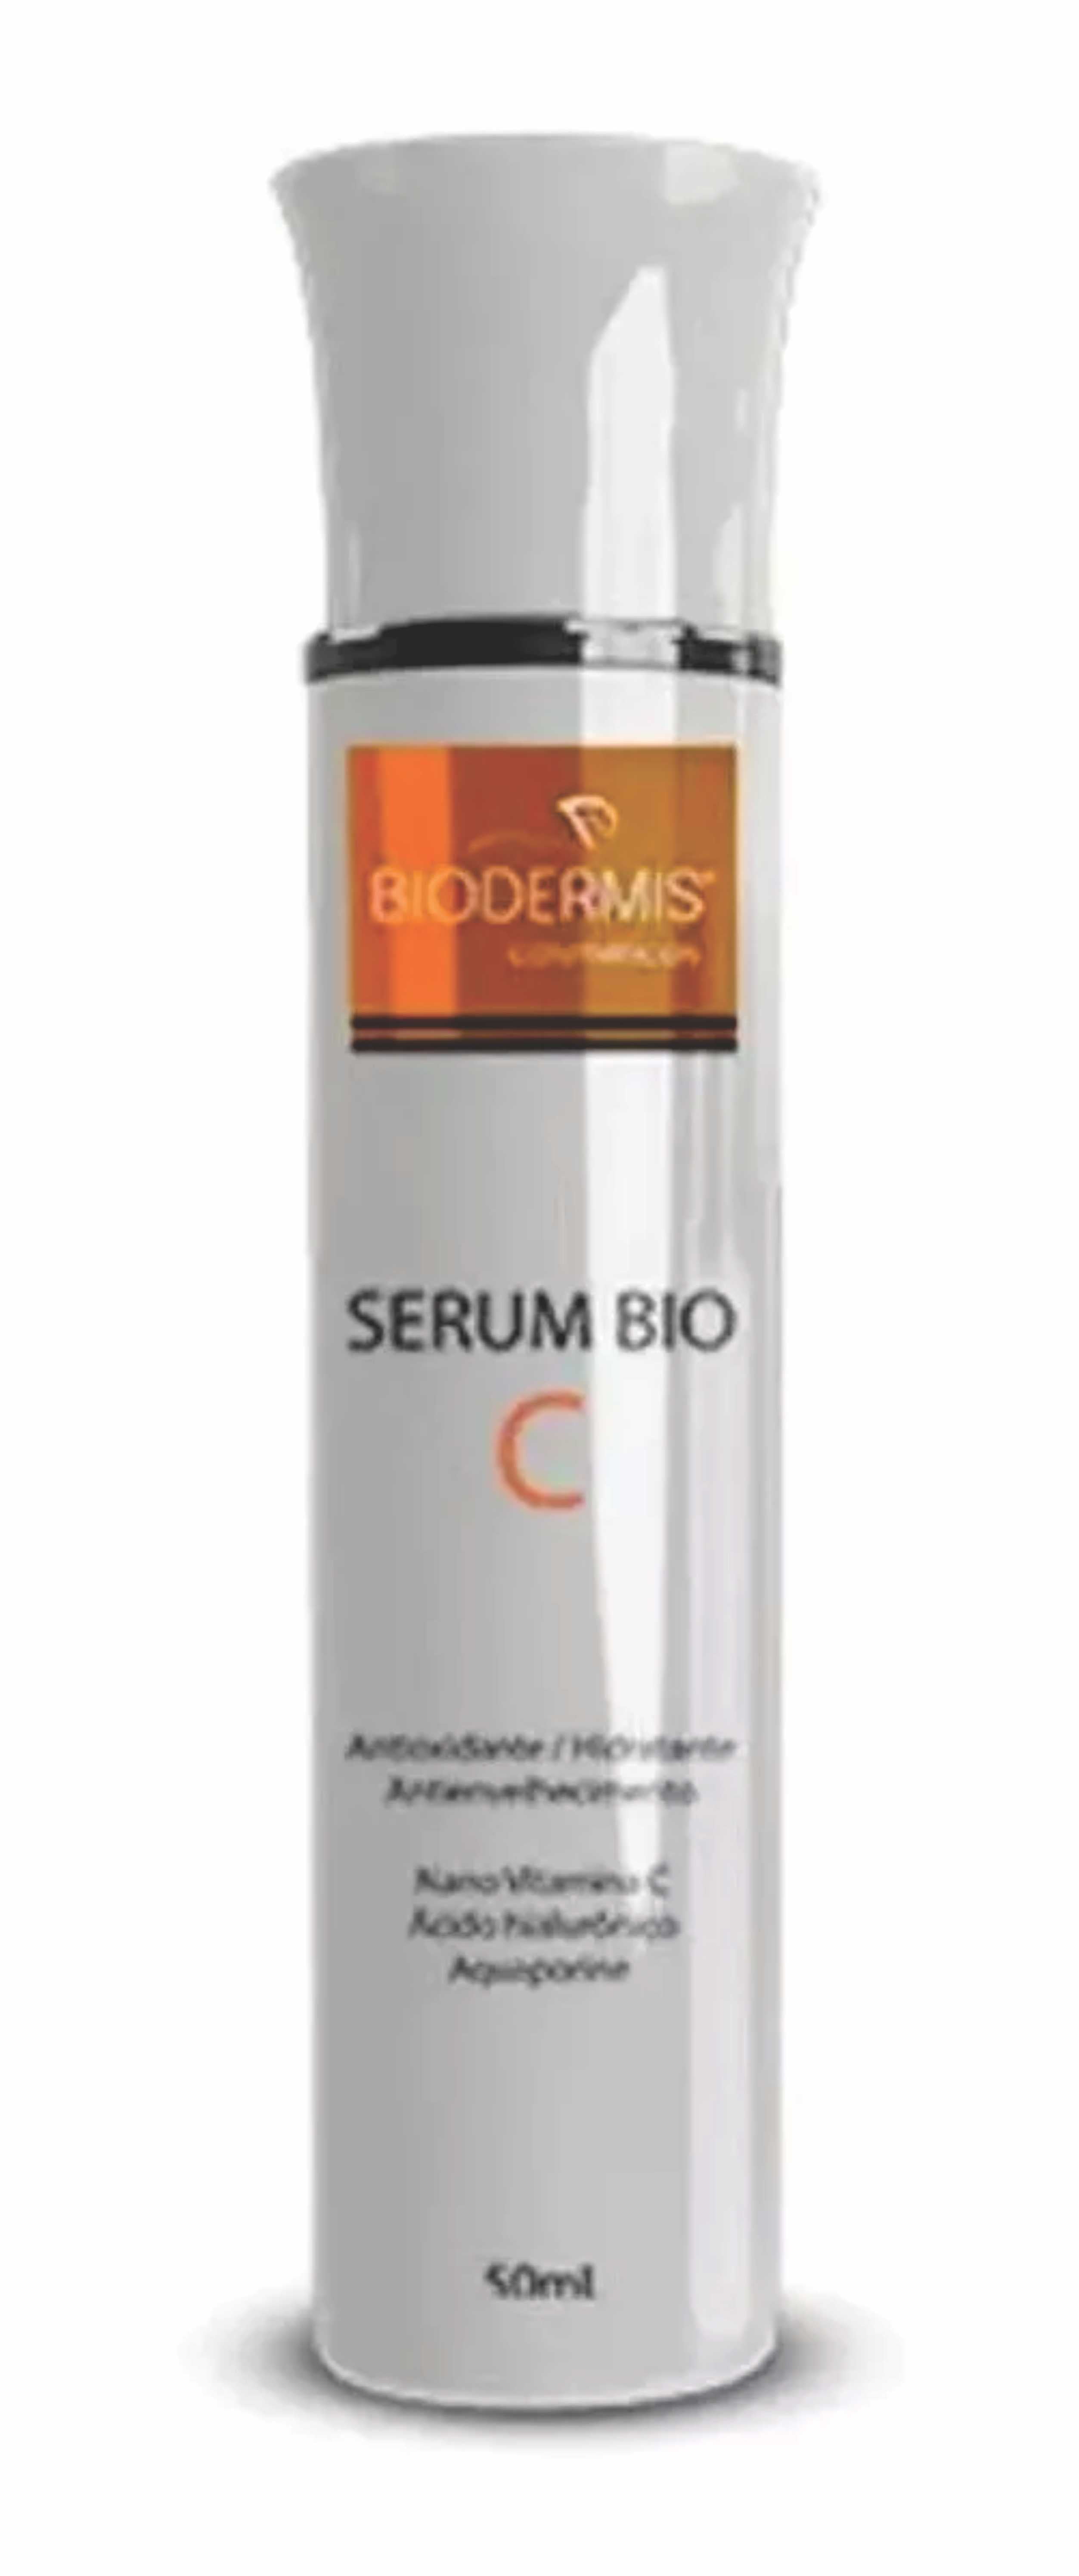 Vitamina C Facial Serum Bio C Biodermis 50ml